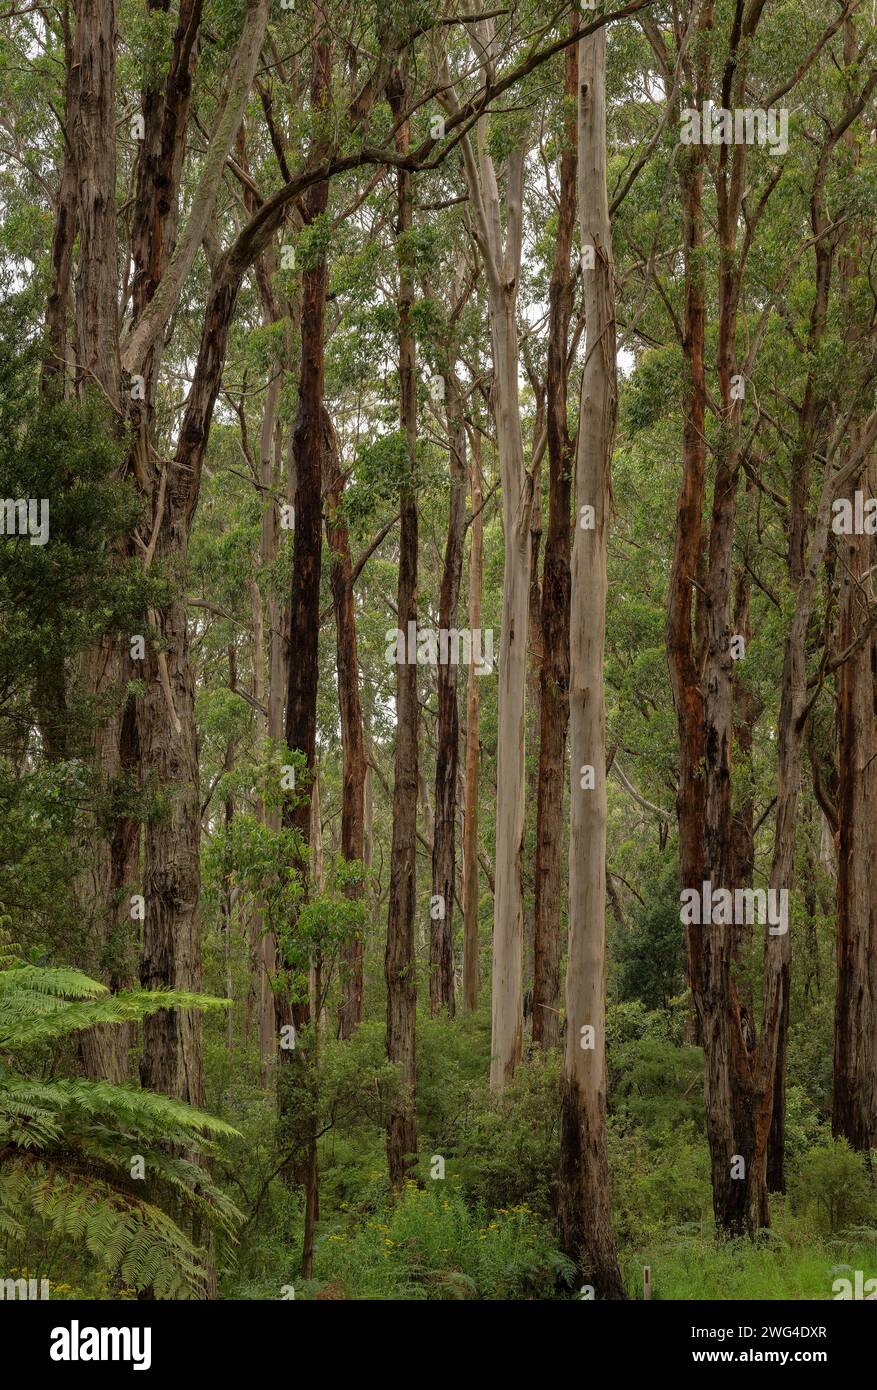 Foresta mista di eucalipto nel Port Campbell National Park, Great Ocean Road, Victoria, Australia. Ottima area per mangiare i koala. Foto Stock